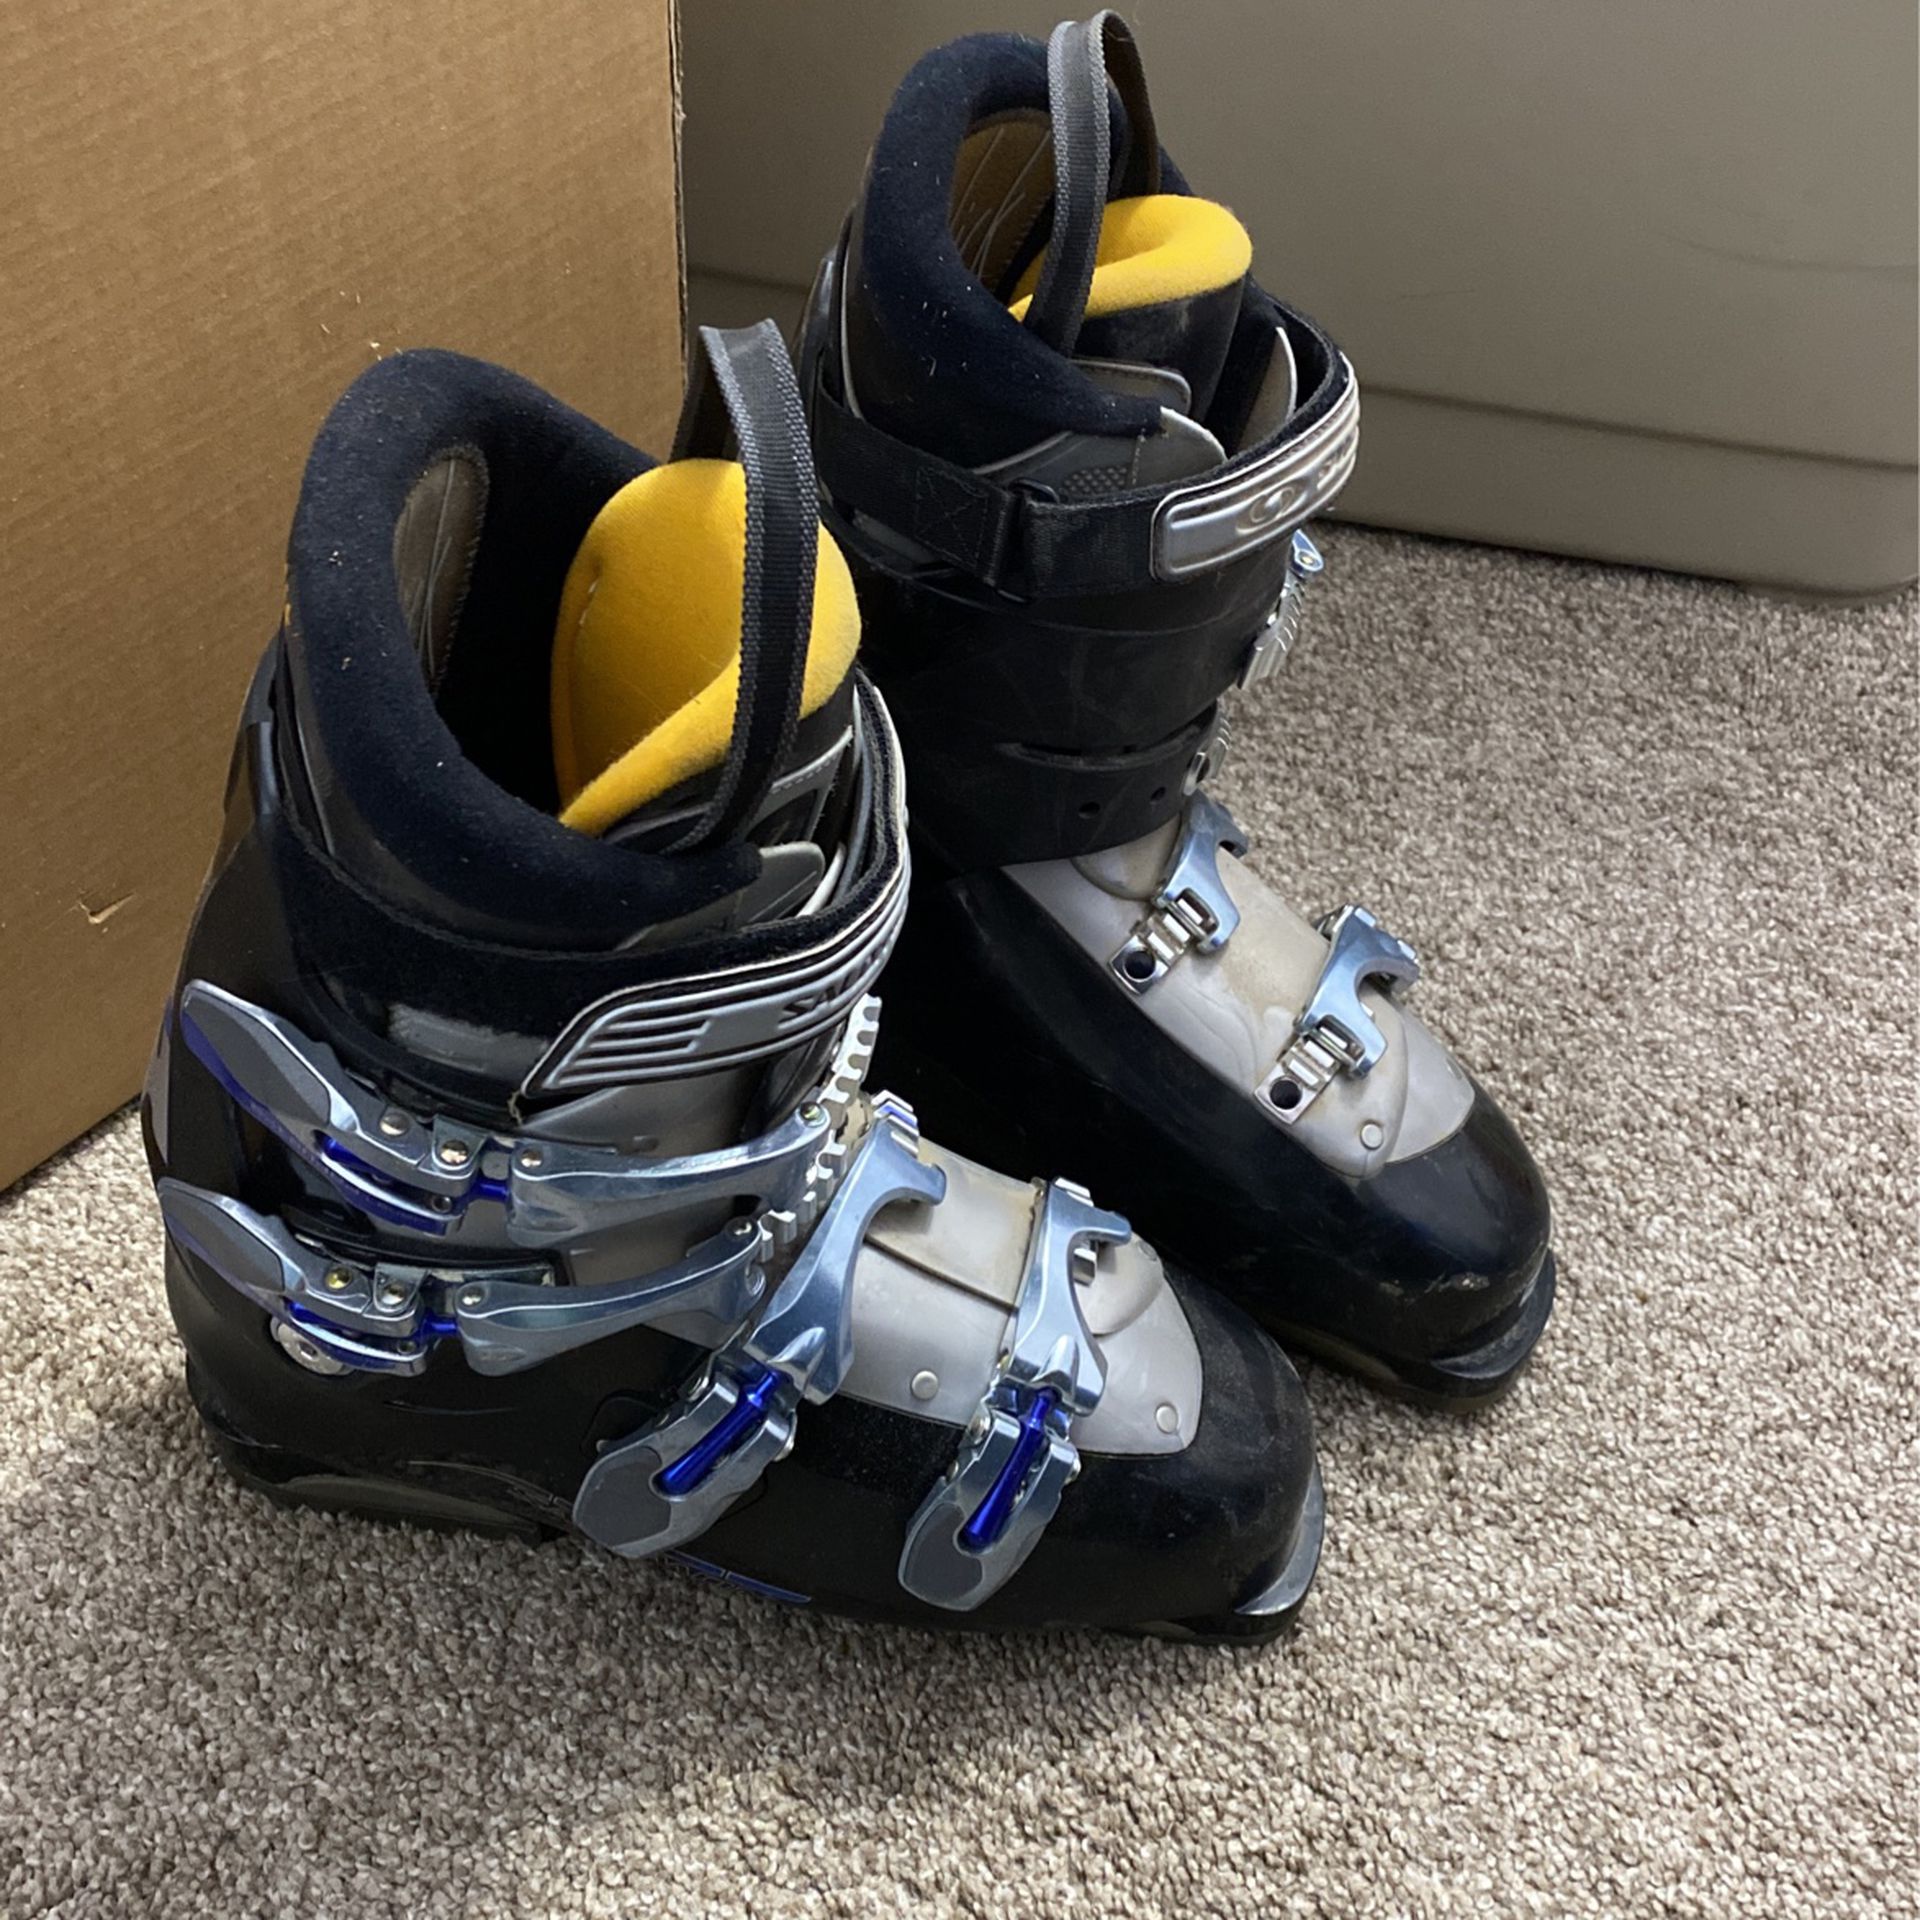 Salomon Performa 7 Ski Boots Size 27.5 